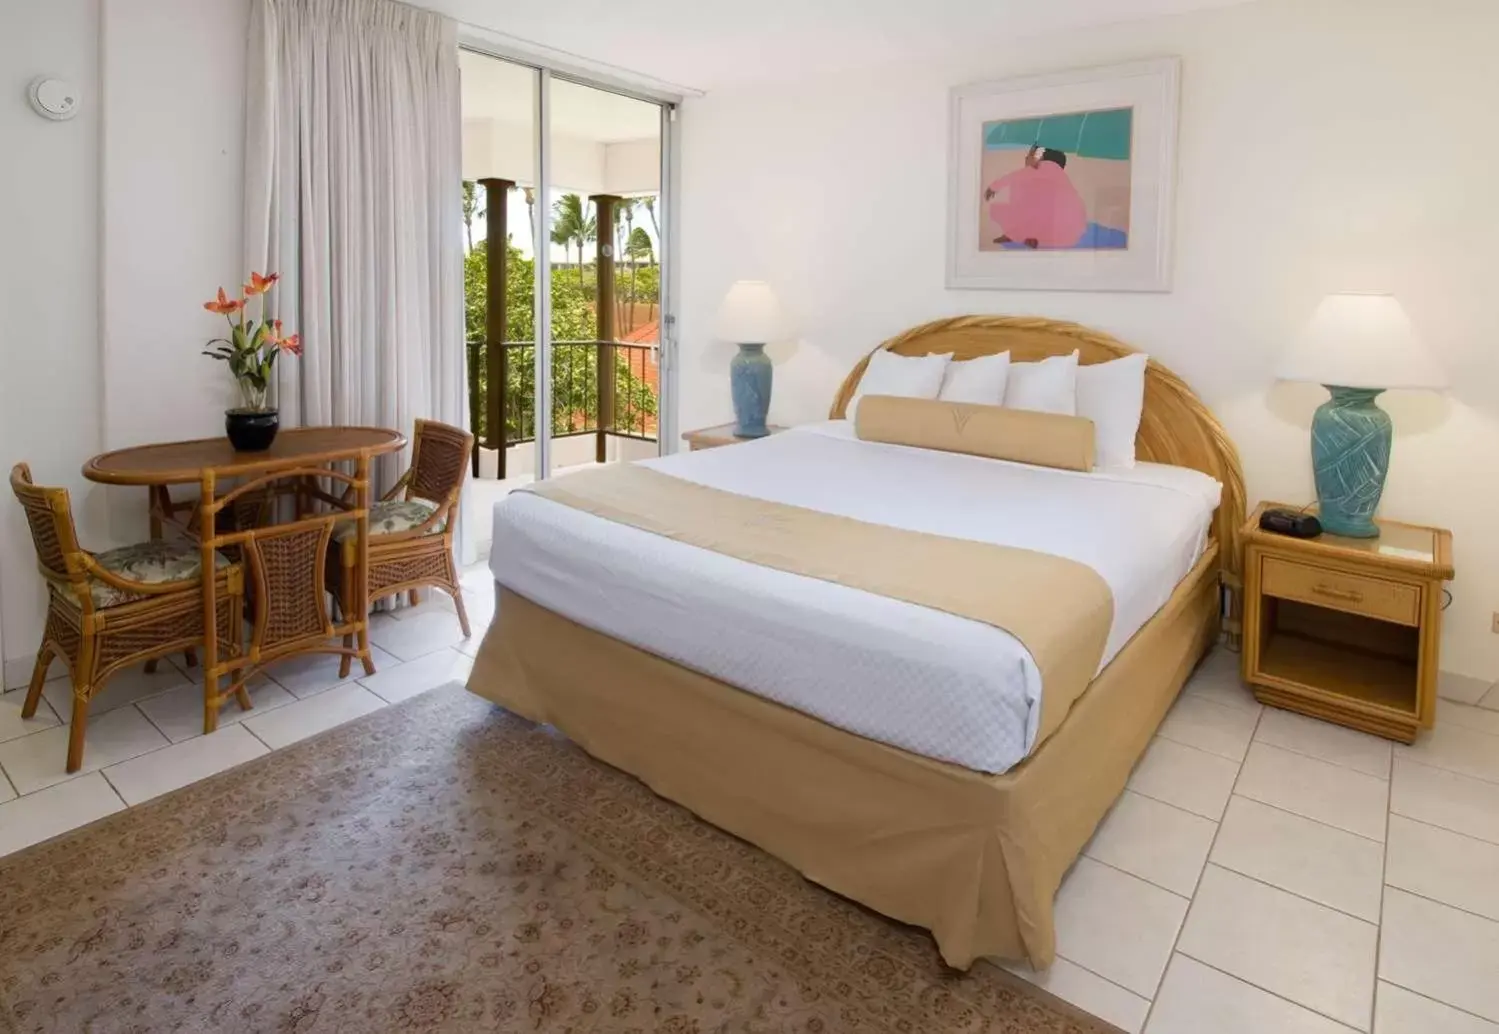 Bedroom, Bed in Aston Maui Kaanapali Villas